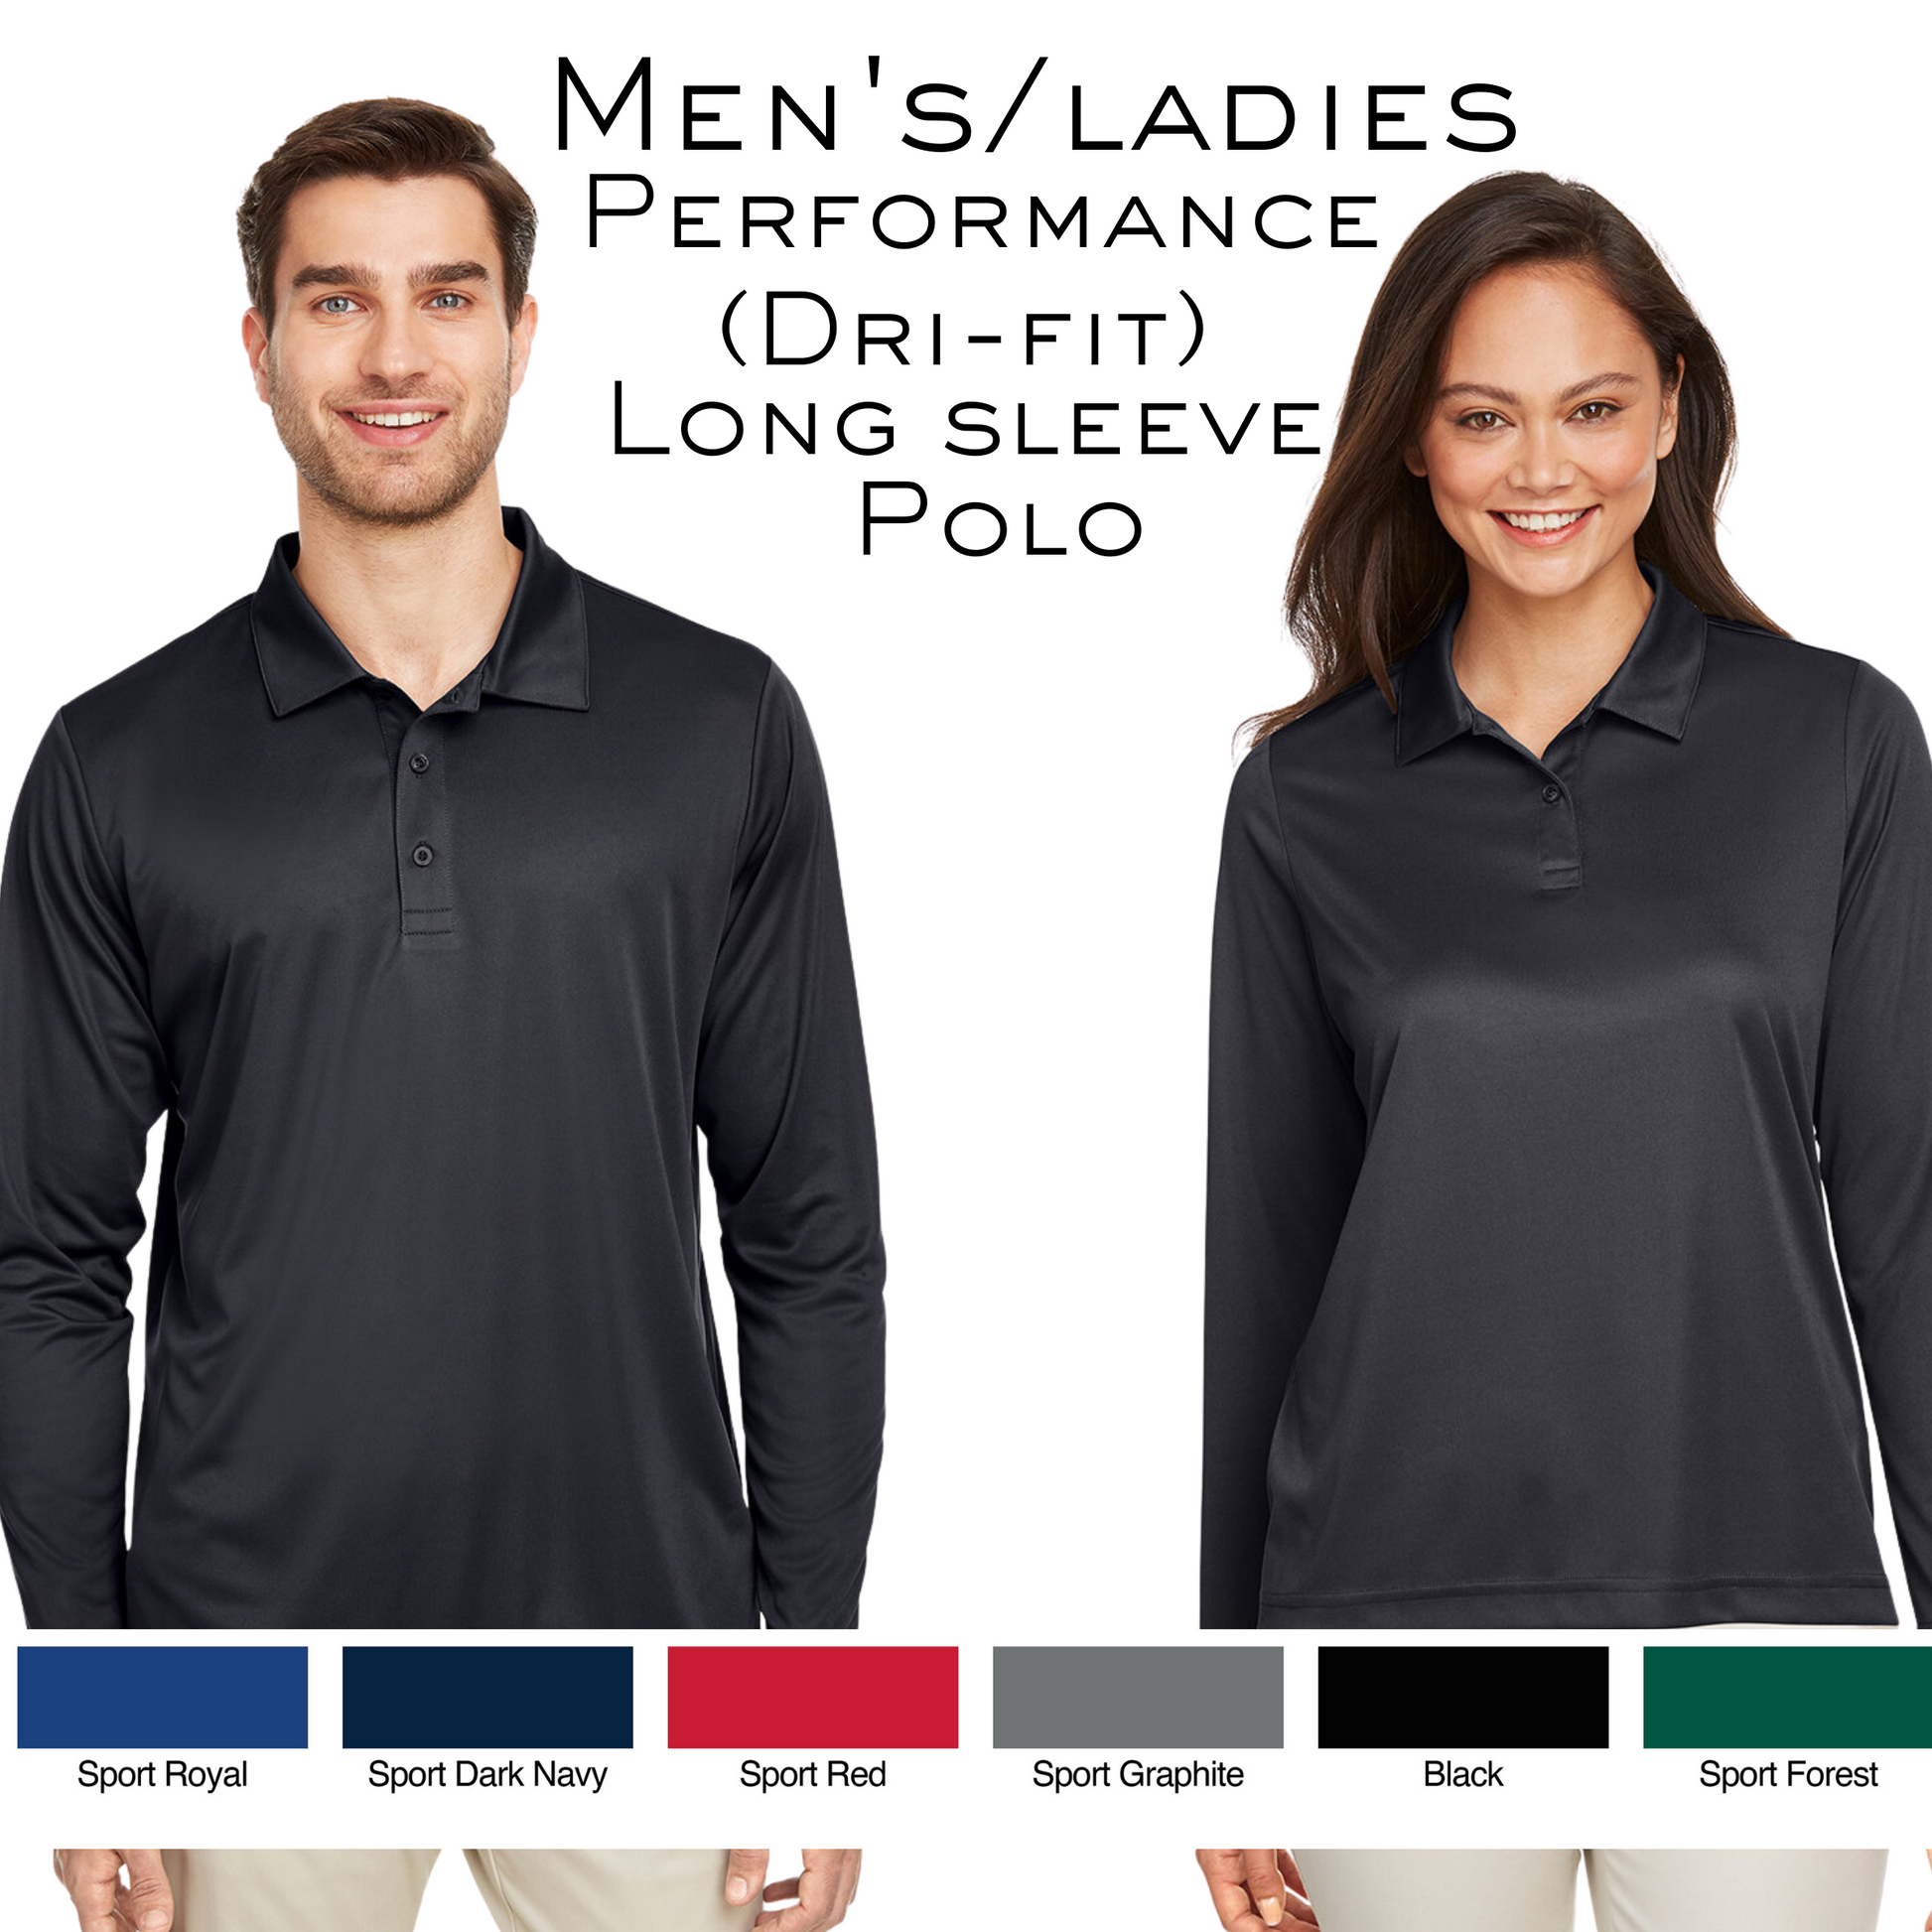 LV-223' Women's Pique Polo Shirt